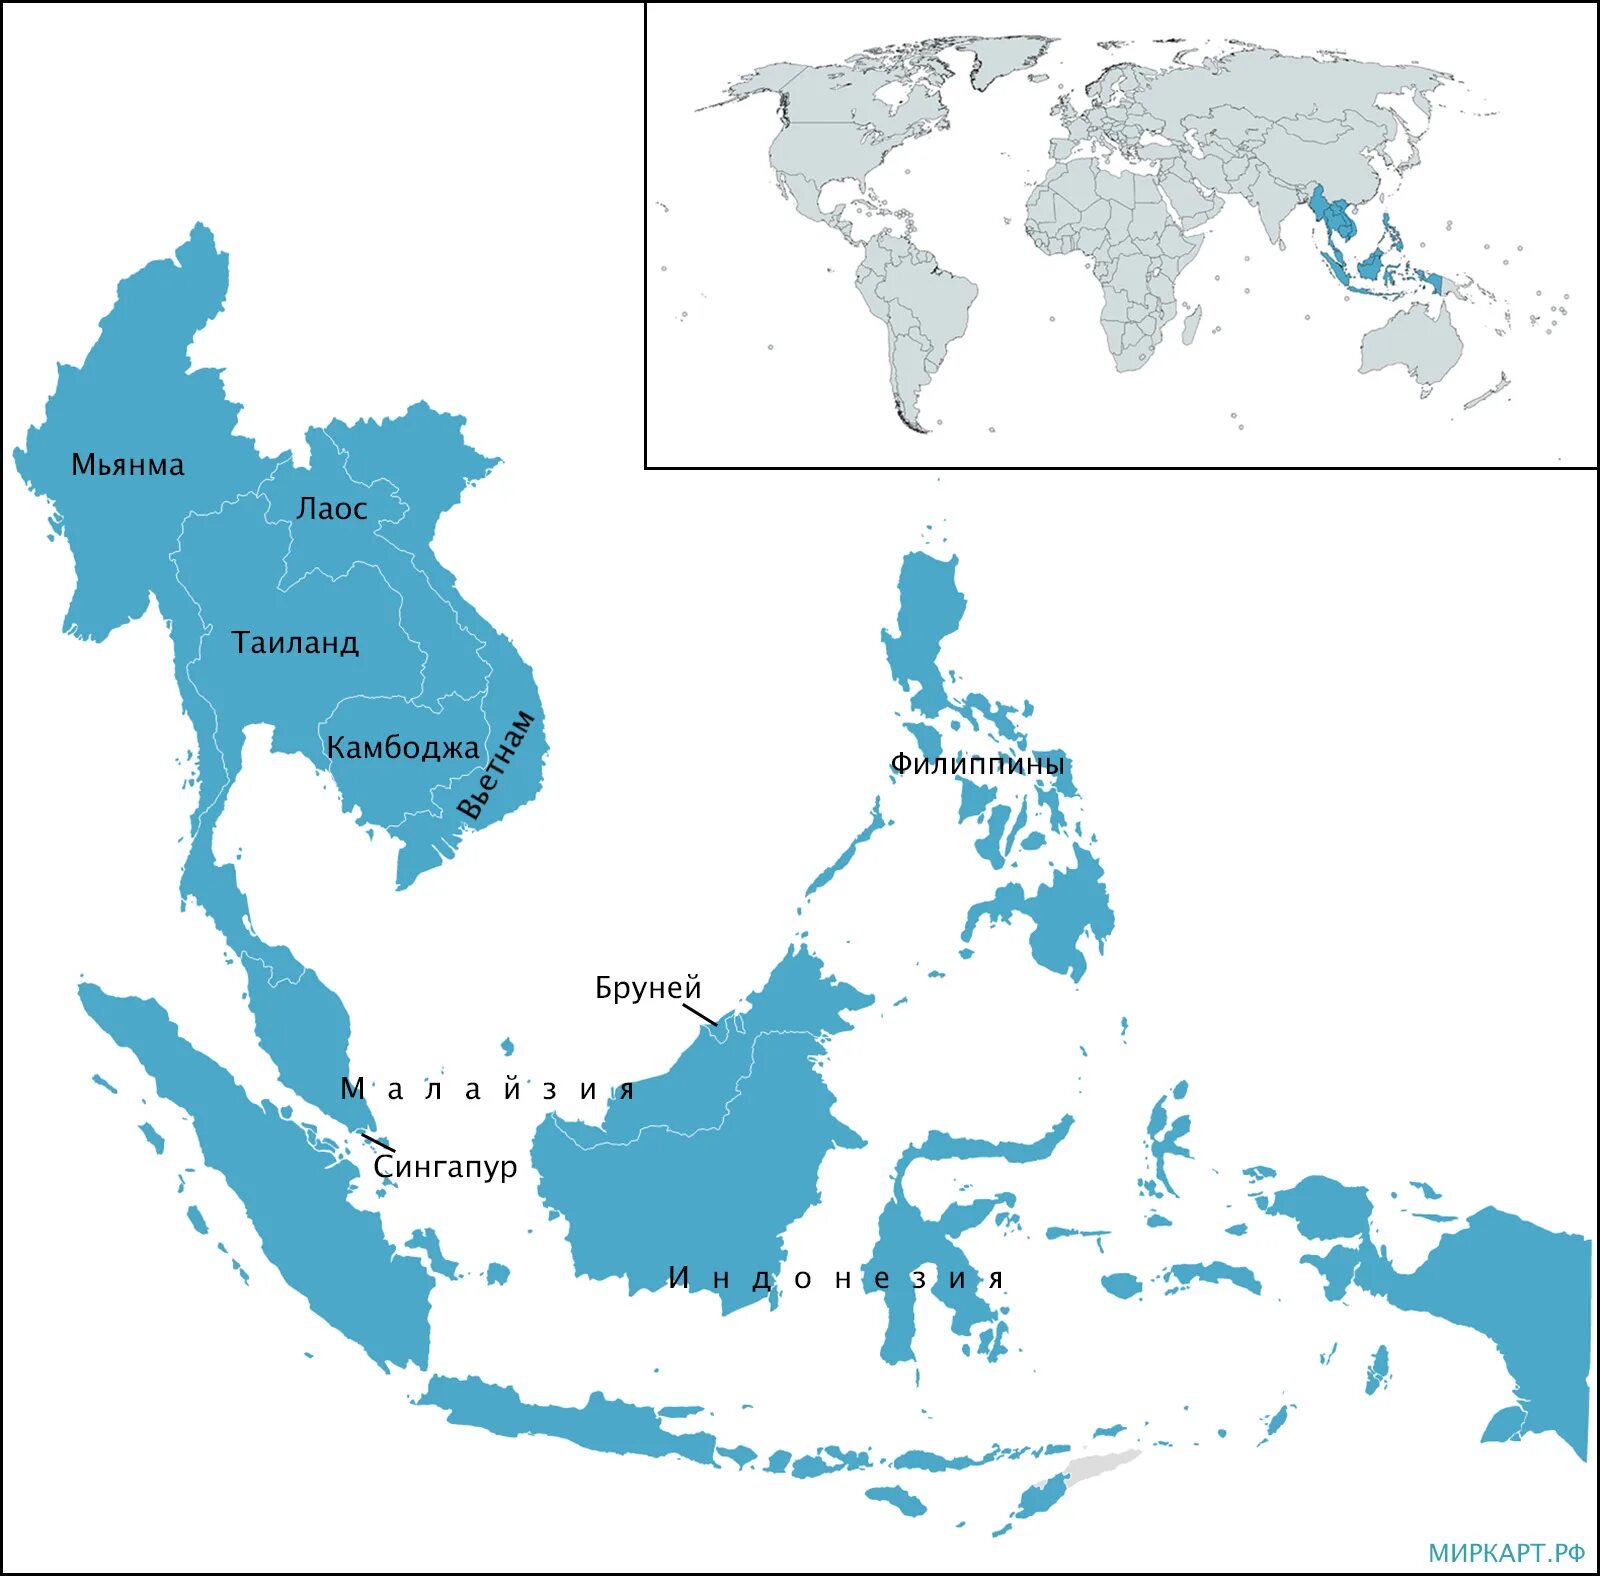 Асеан на карте. Ассоциация государств Юго-Восточной Азии на карте. Страны входящие в АСЕАН контурная карта. Ассоциация государств Юго-Восточной Азии (АСЕАН) на карте.